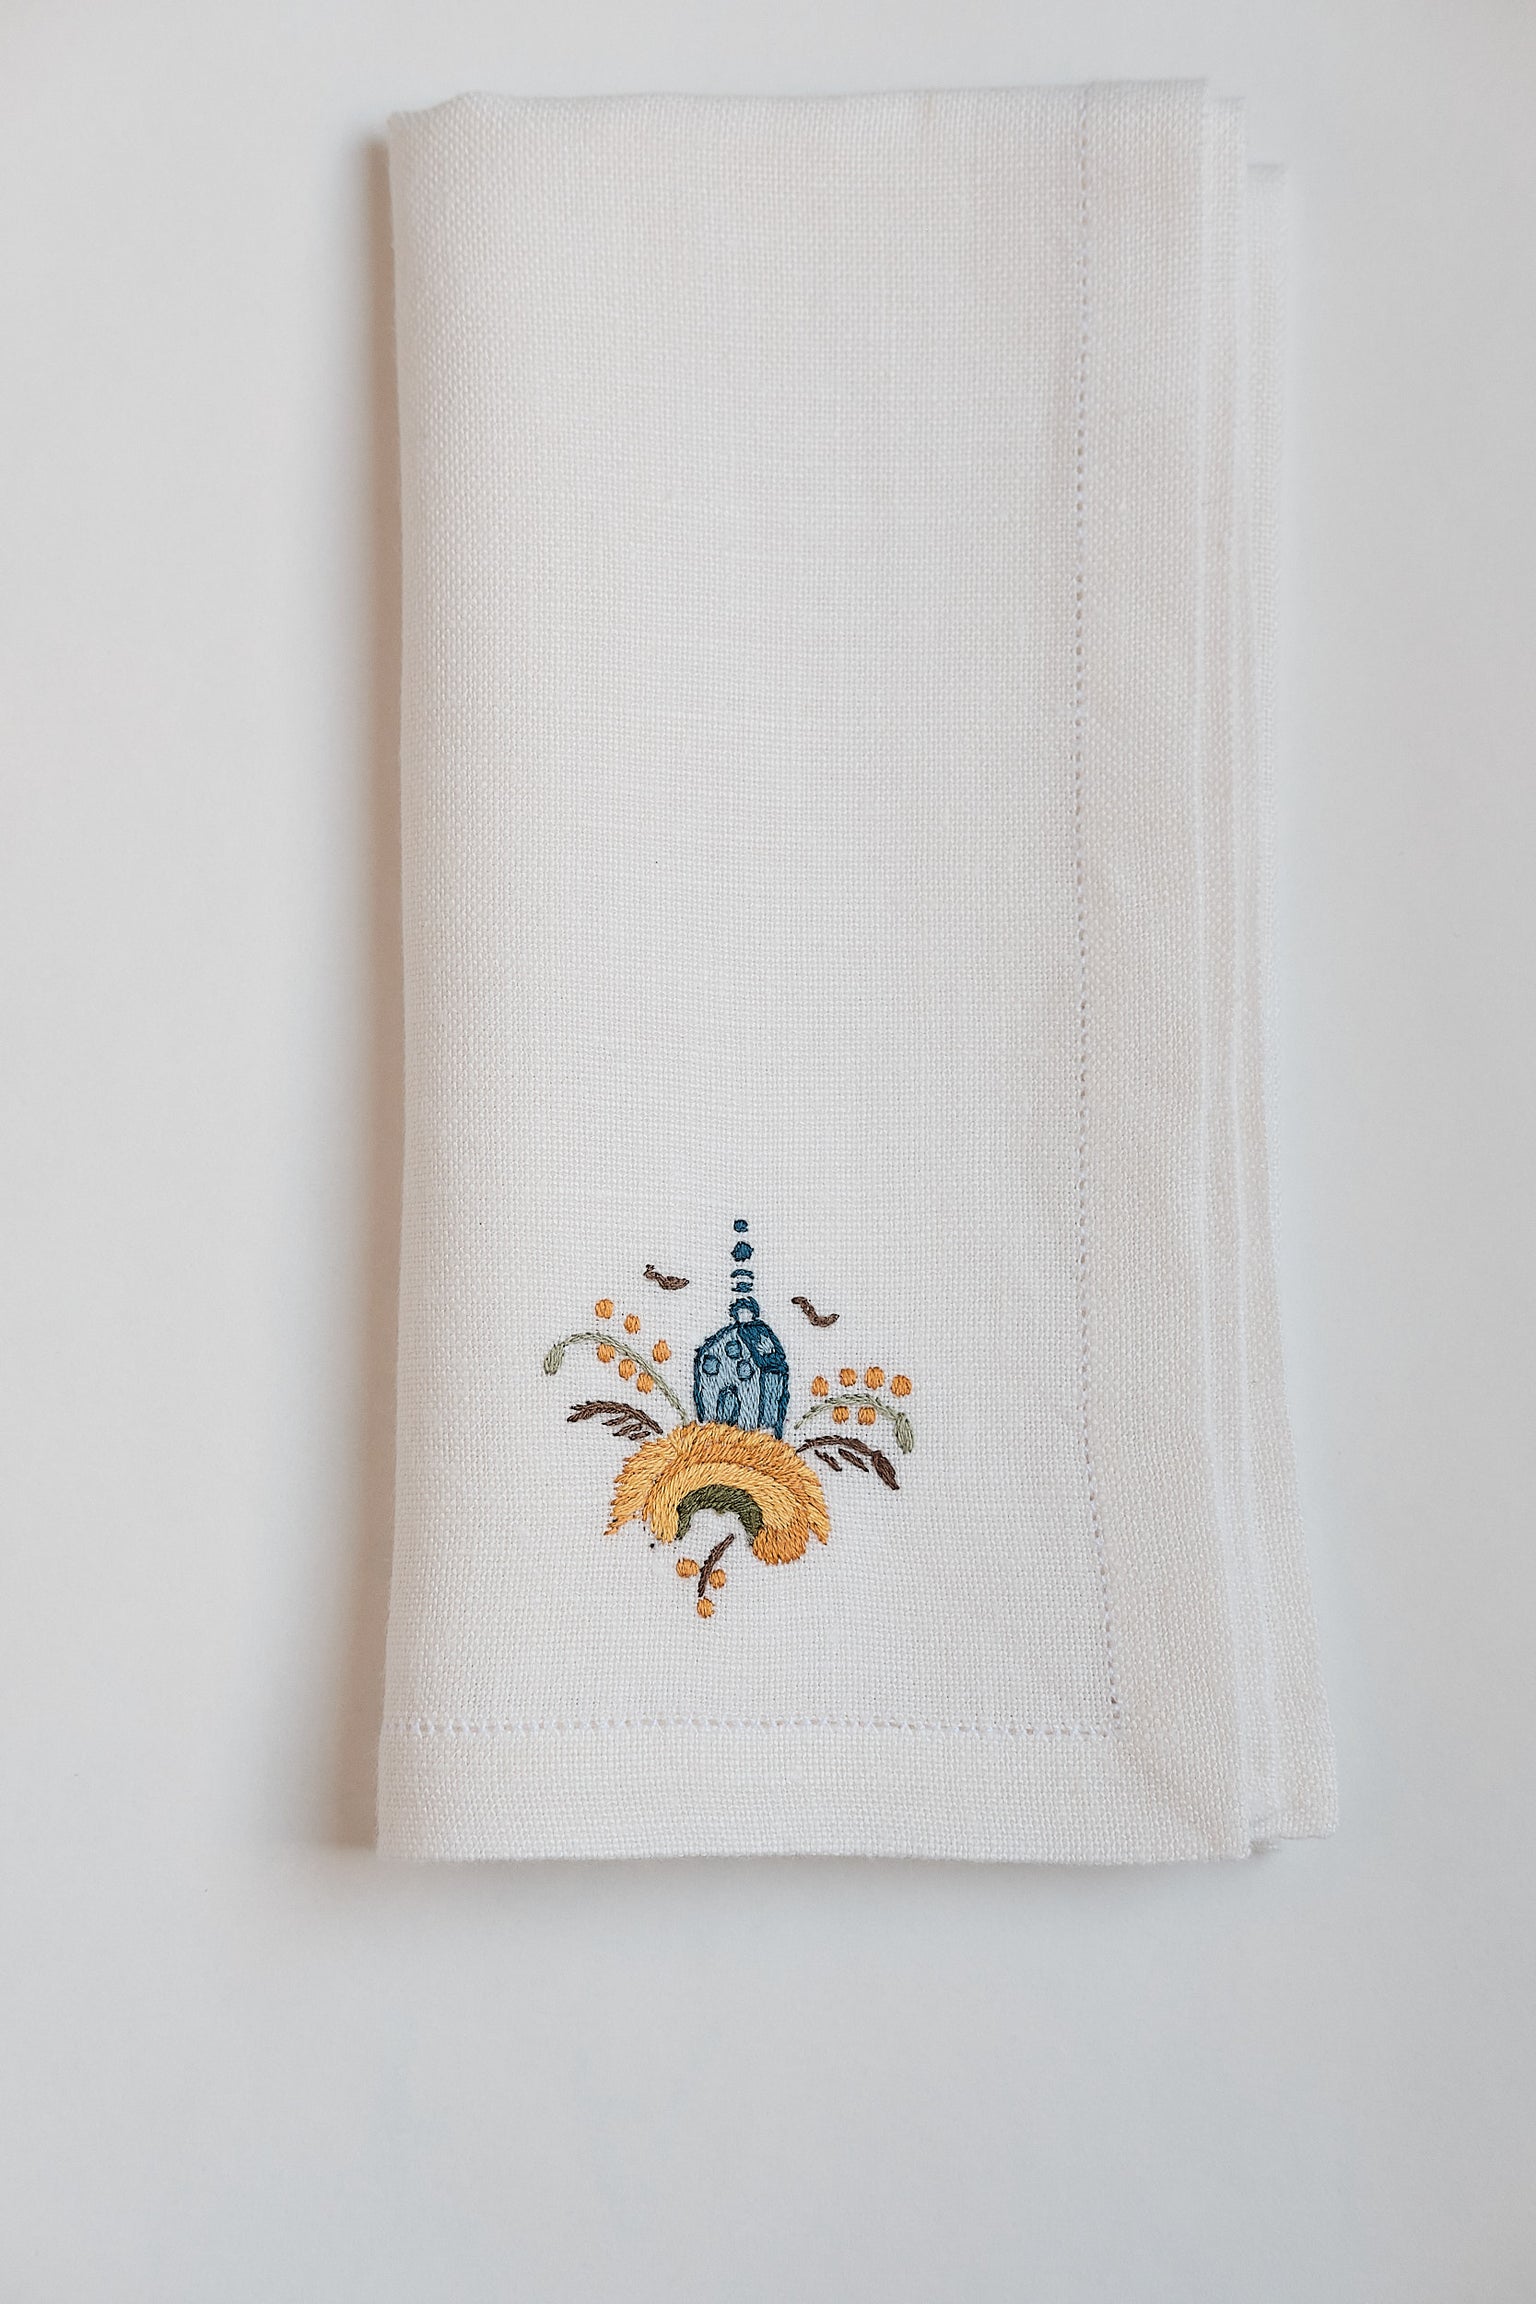 Detalle servilleta bordada a mano Alcóra